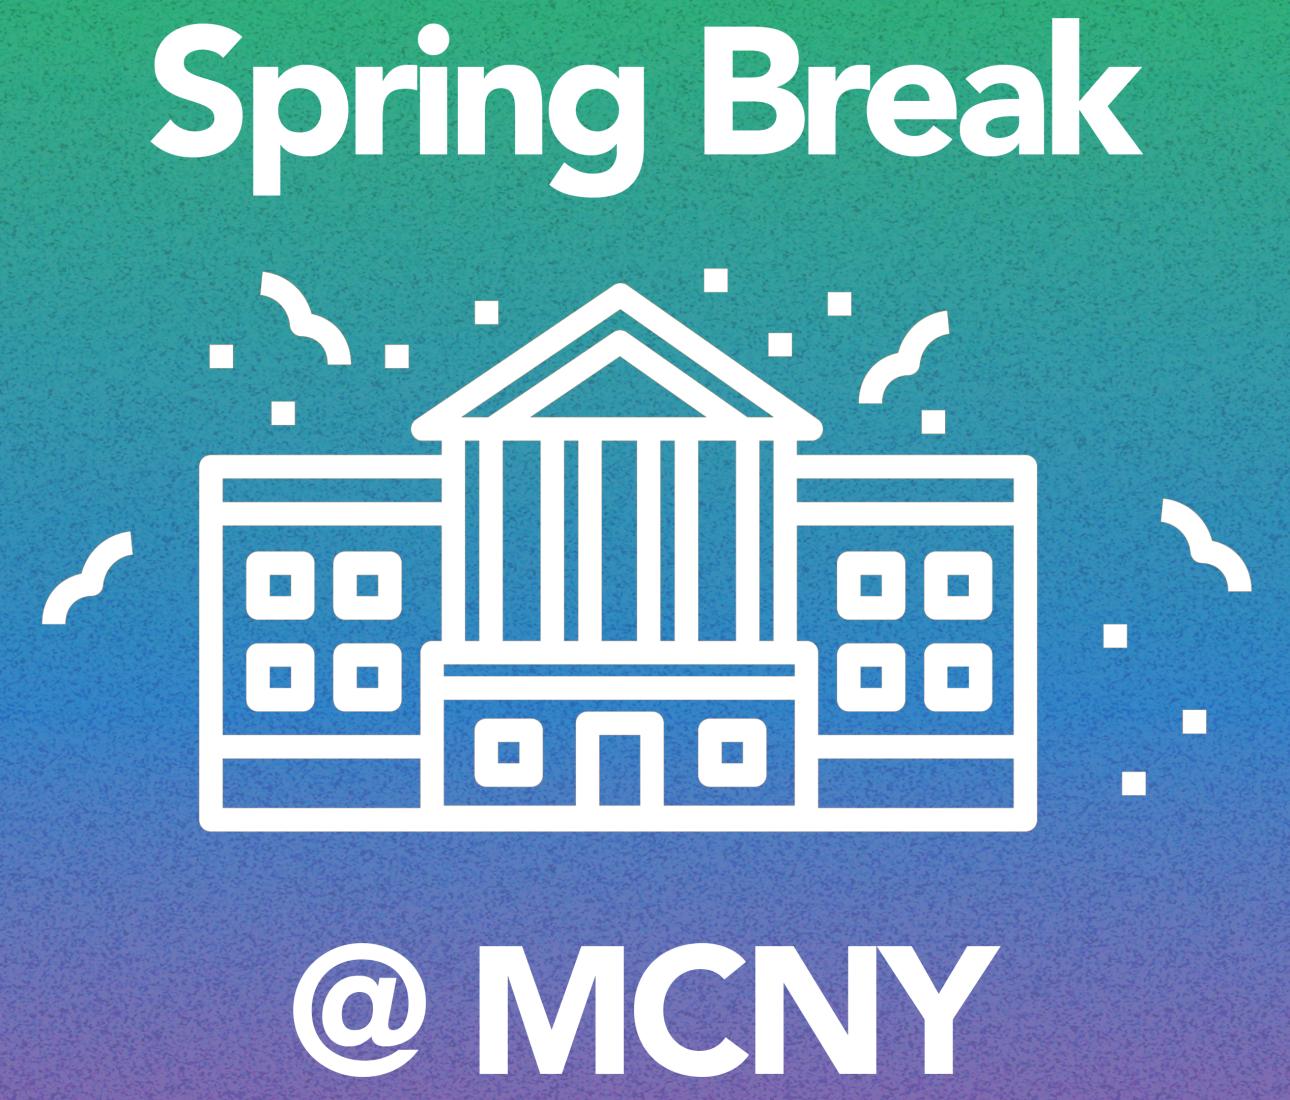 Spring Break! @ MCNY